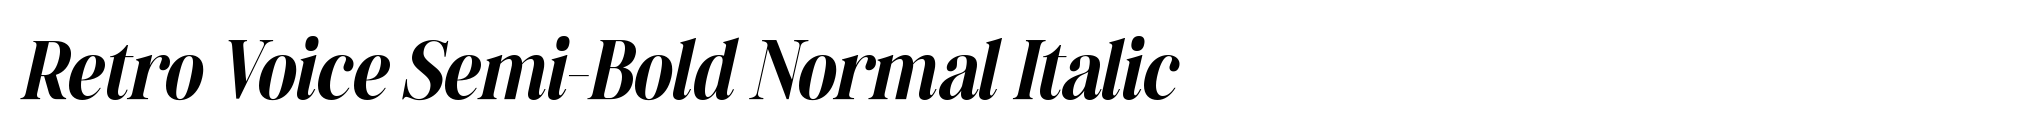 Retro Voice Semi-Bold Normal Italic image